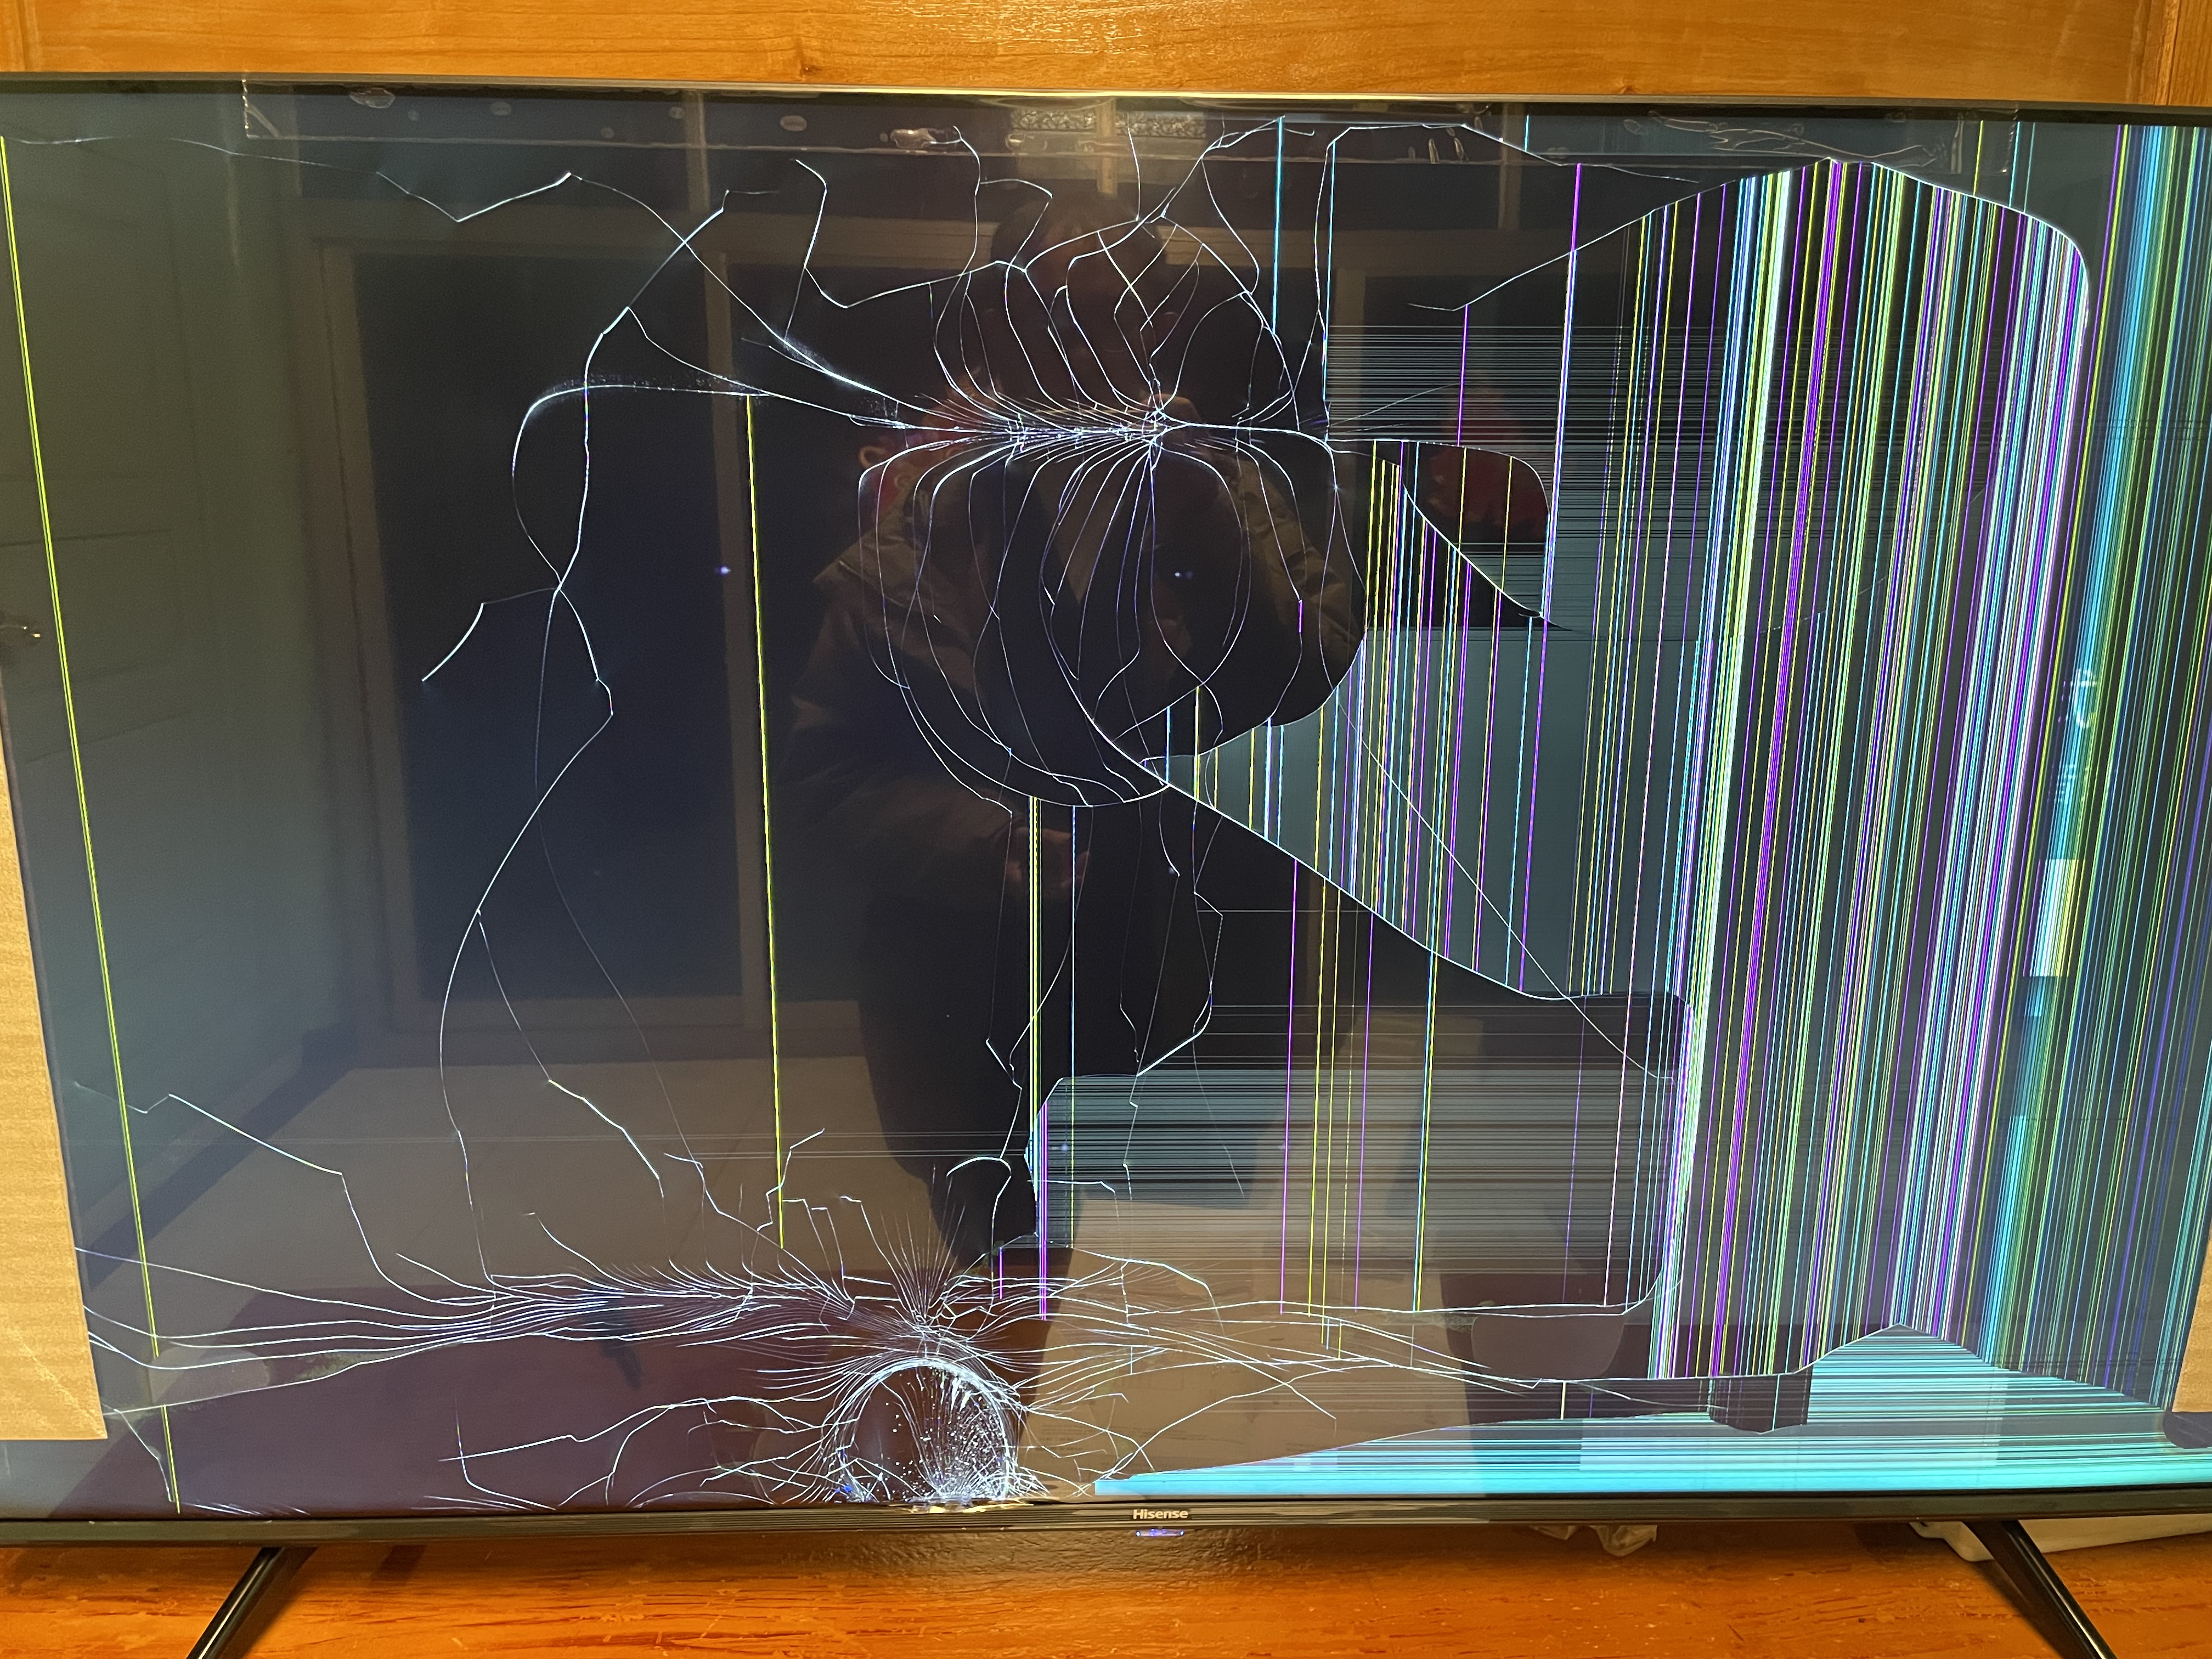 电视砸坏屏幕图片图片